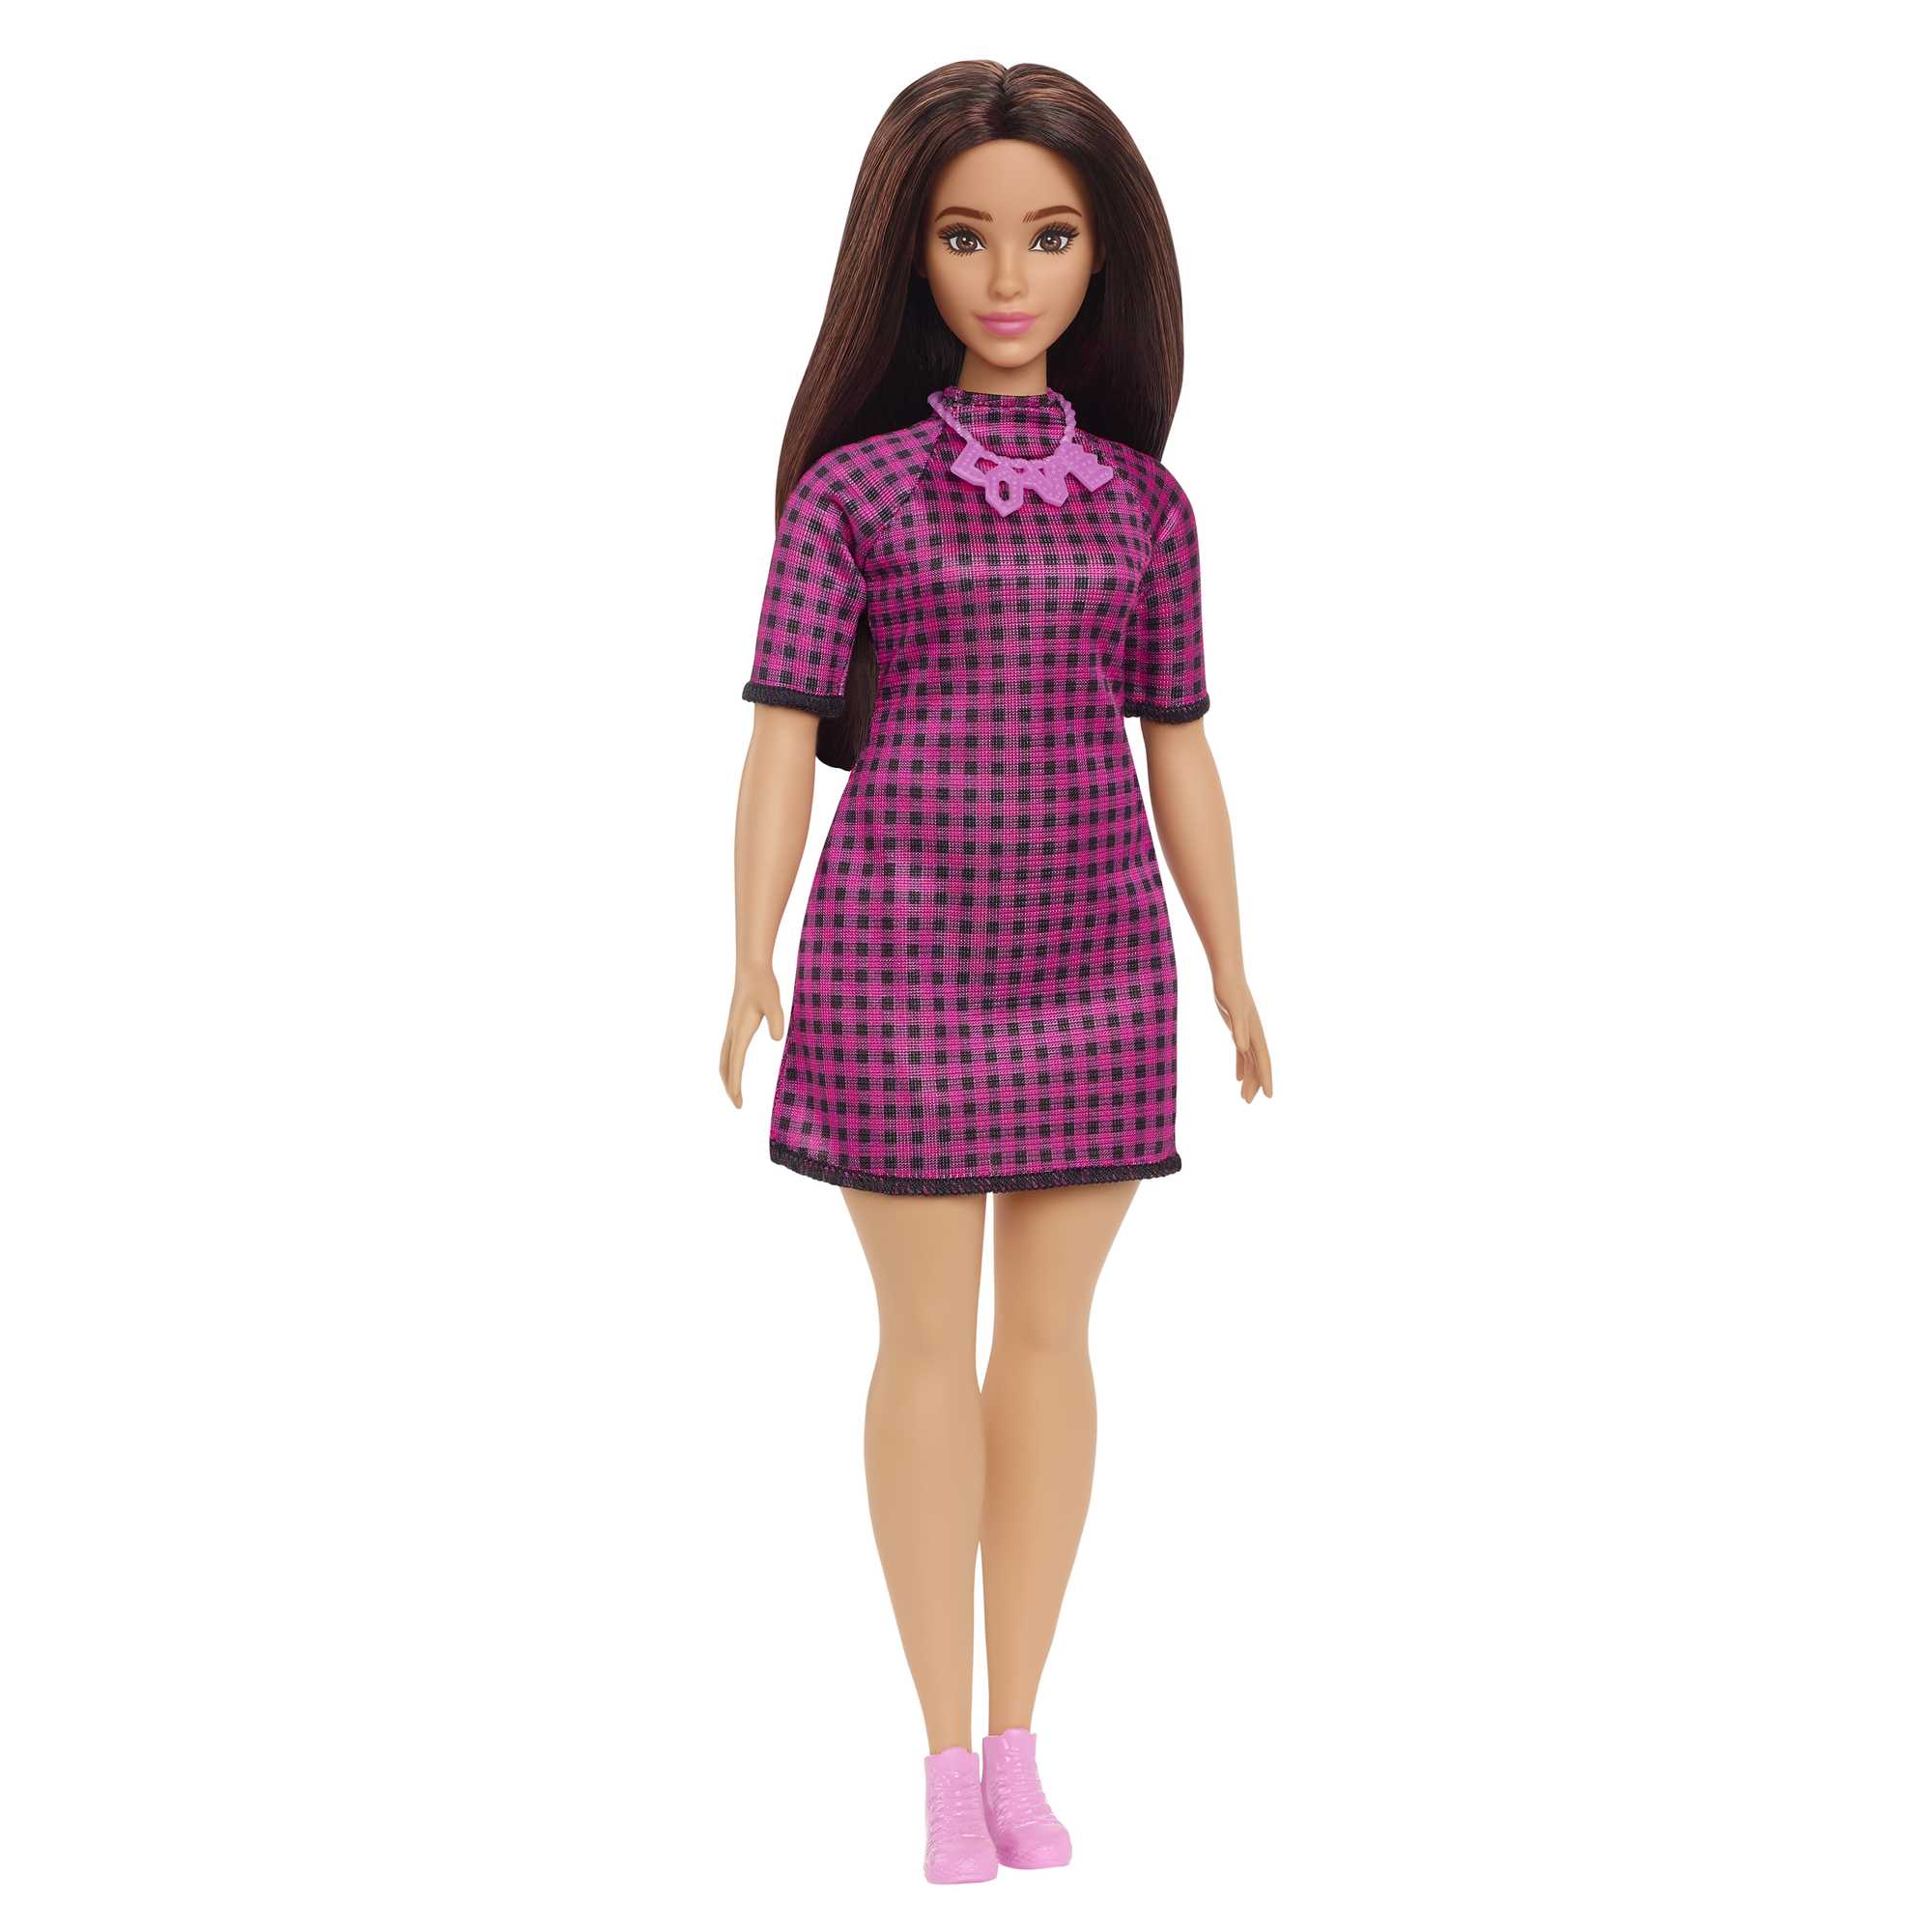 Кукла Mattel Barbie с длинными волосами брюнетка HBV20 кукла mattel barbie gbk18 barbie x crayola фруктовый сюрприз блондинка